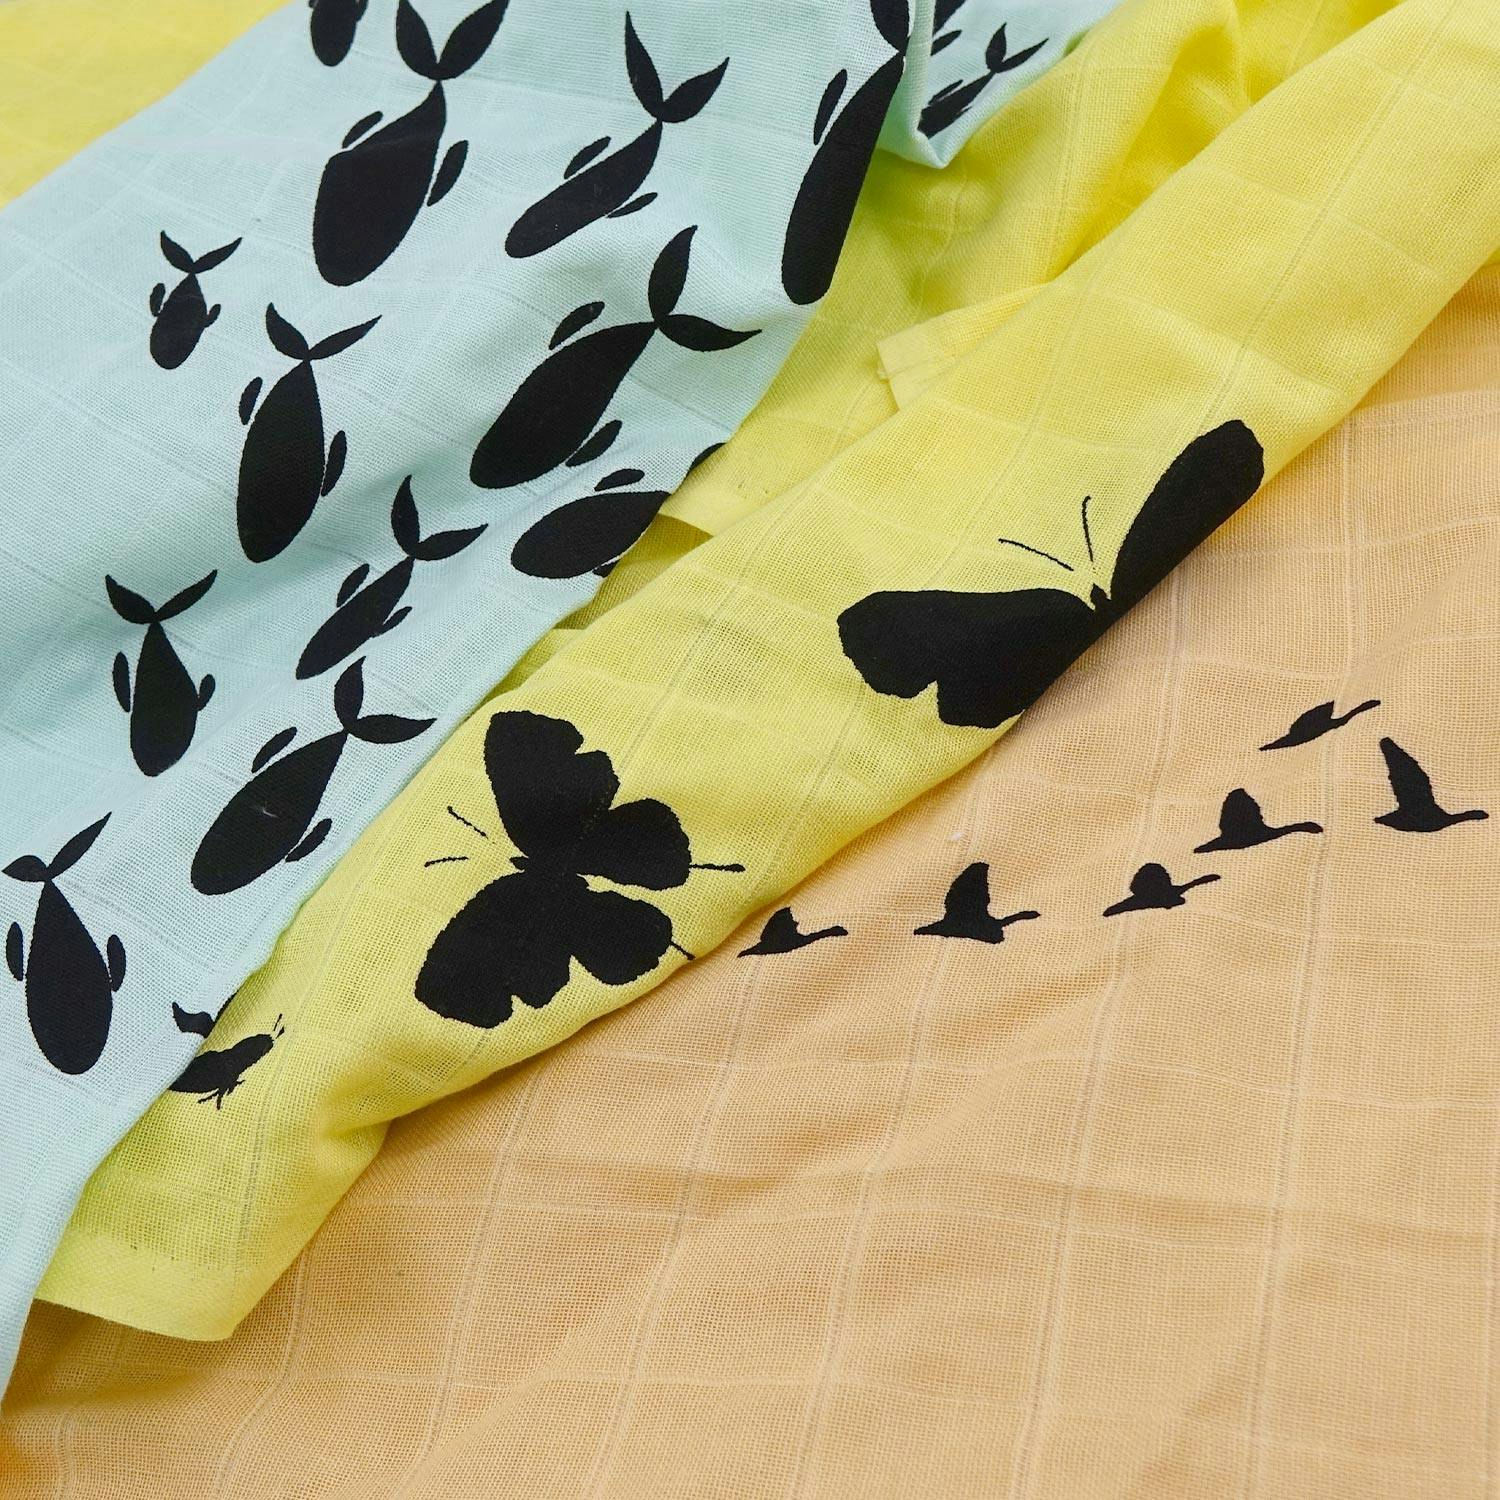 3 tygblöjor: en blå vikblöja med fiskar på, en gul vikblöja med fjärilar på, en orange vikblöja med flygande fåglar på. 3 cloth diapers in form of flat diapers in different colors and patterns.